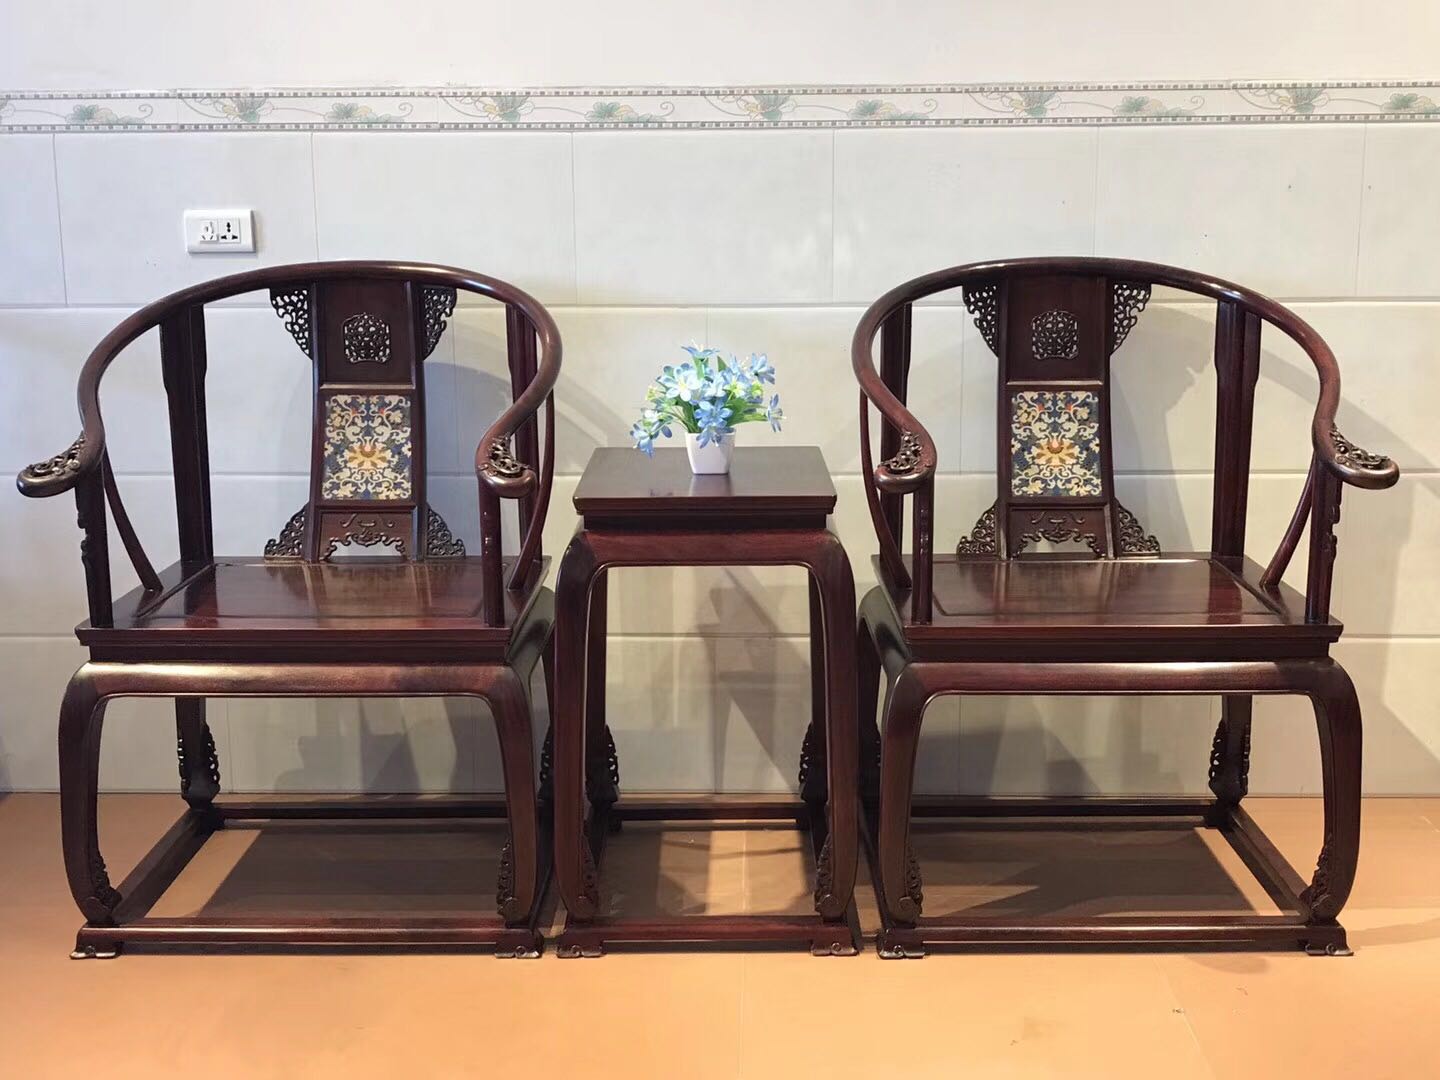 皇宫椅,古典红木家具的典范